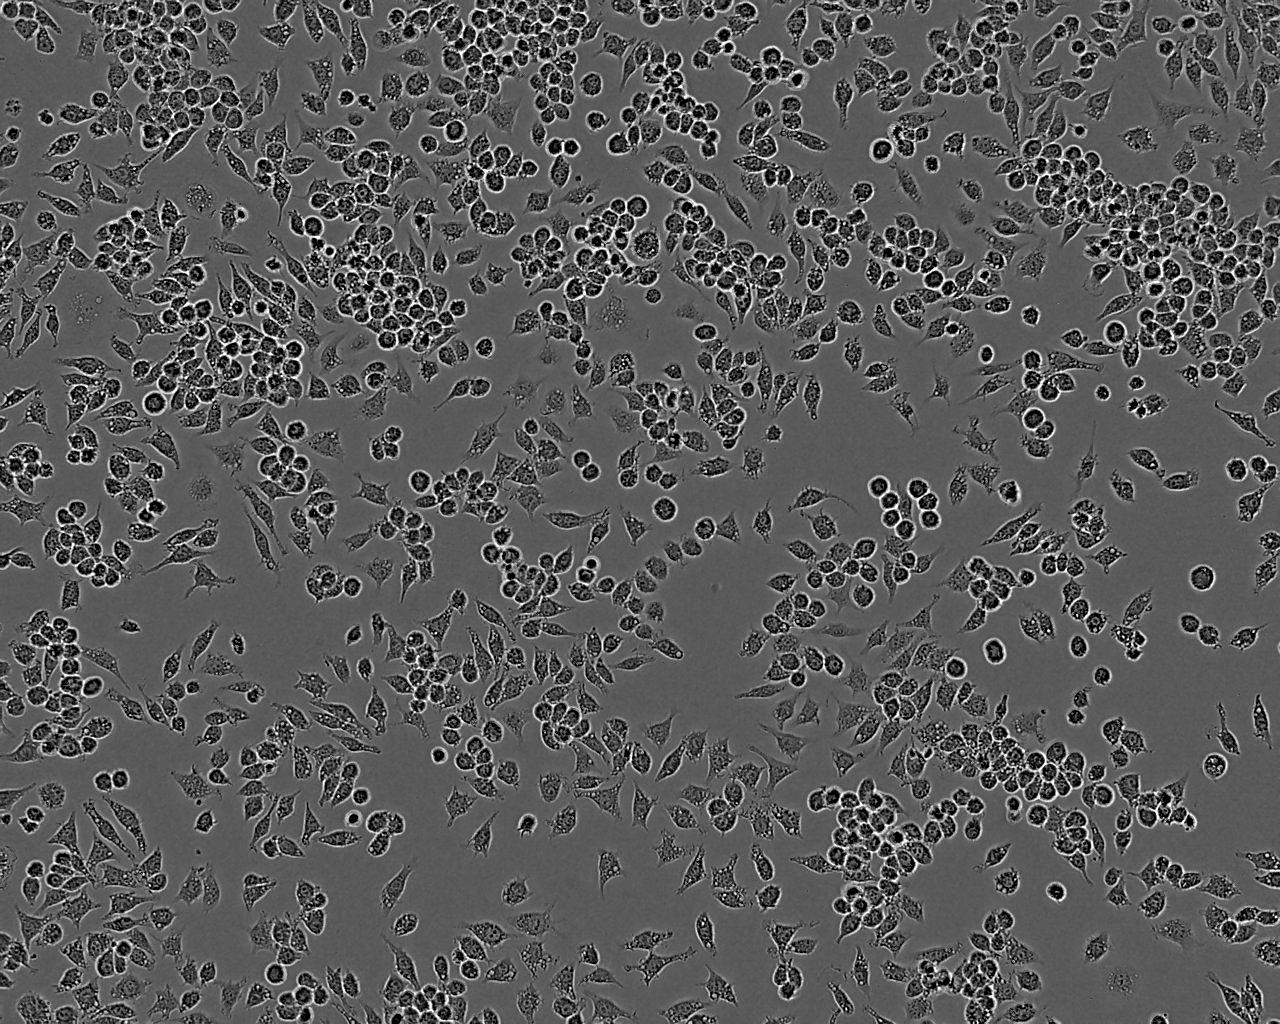 HLF-a epithelioid cells人肺细胞系